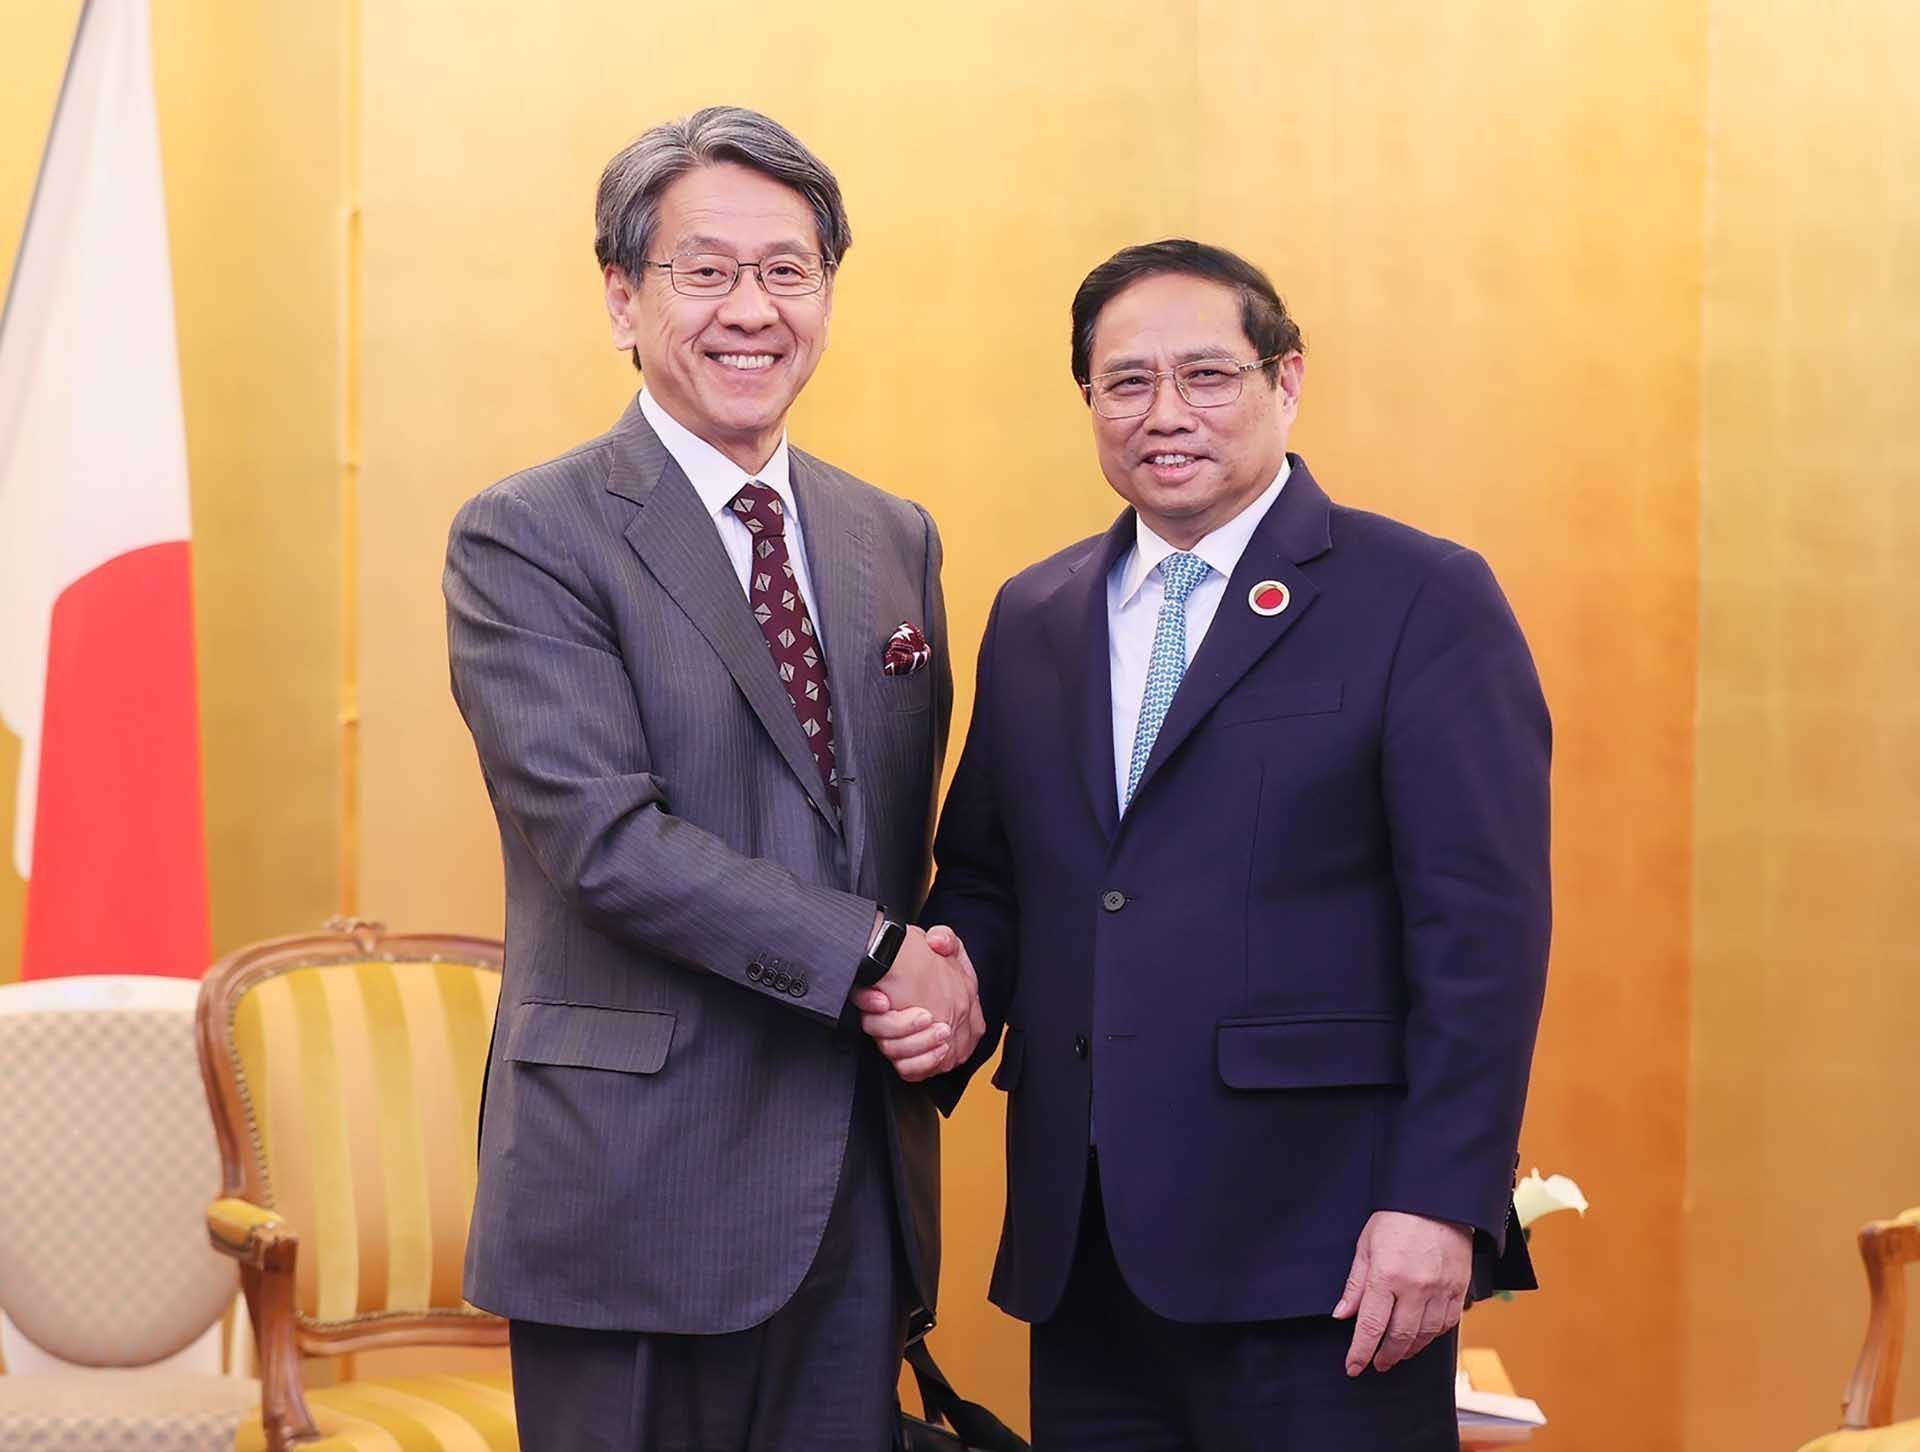 Thủ tướng Phạm Minh Chính kết thúc tốt đẹp chuyến tham dự Hội nghị cấp cao ASEAN-Nhật Bản và hoạt động song phương tại Nhật Bản